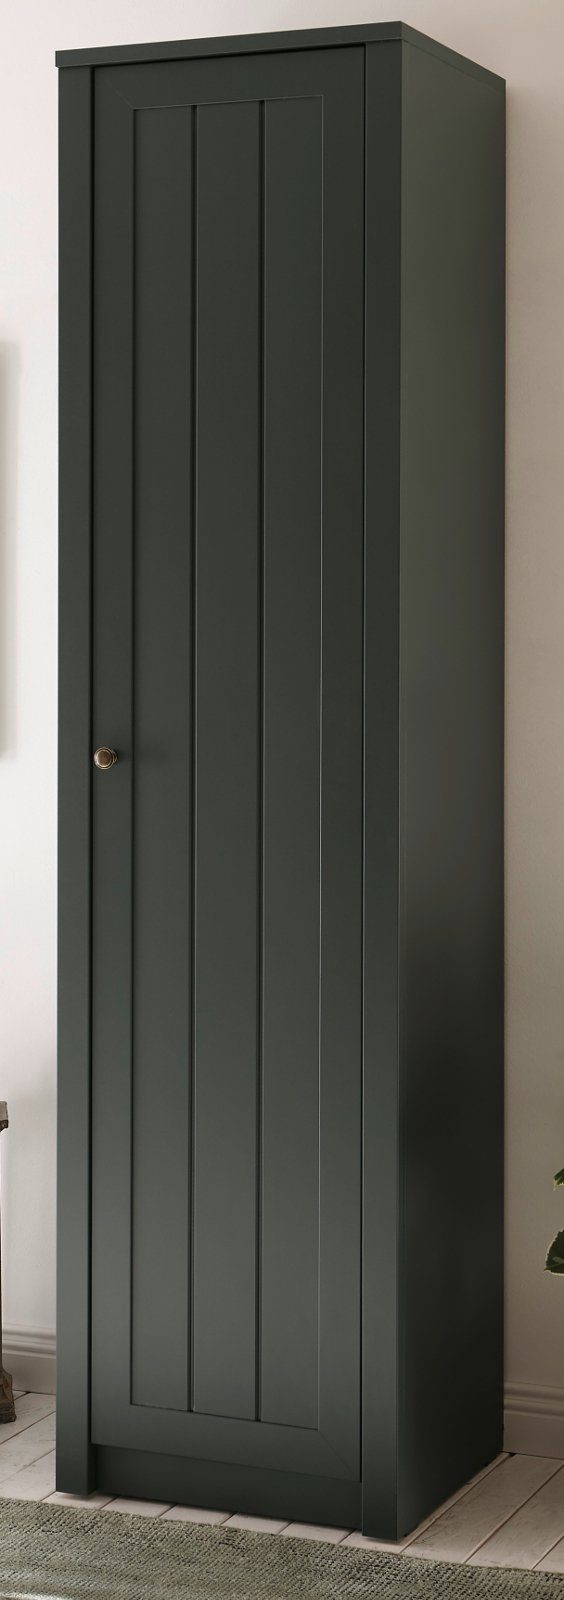 IMV Stauraumschrank Forres (Mehrzweckschrank in Landhaus grün, 50 x 197 cm) mit viel Stauraum